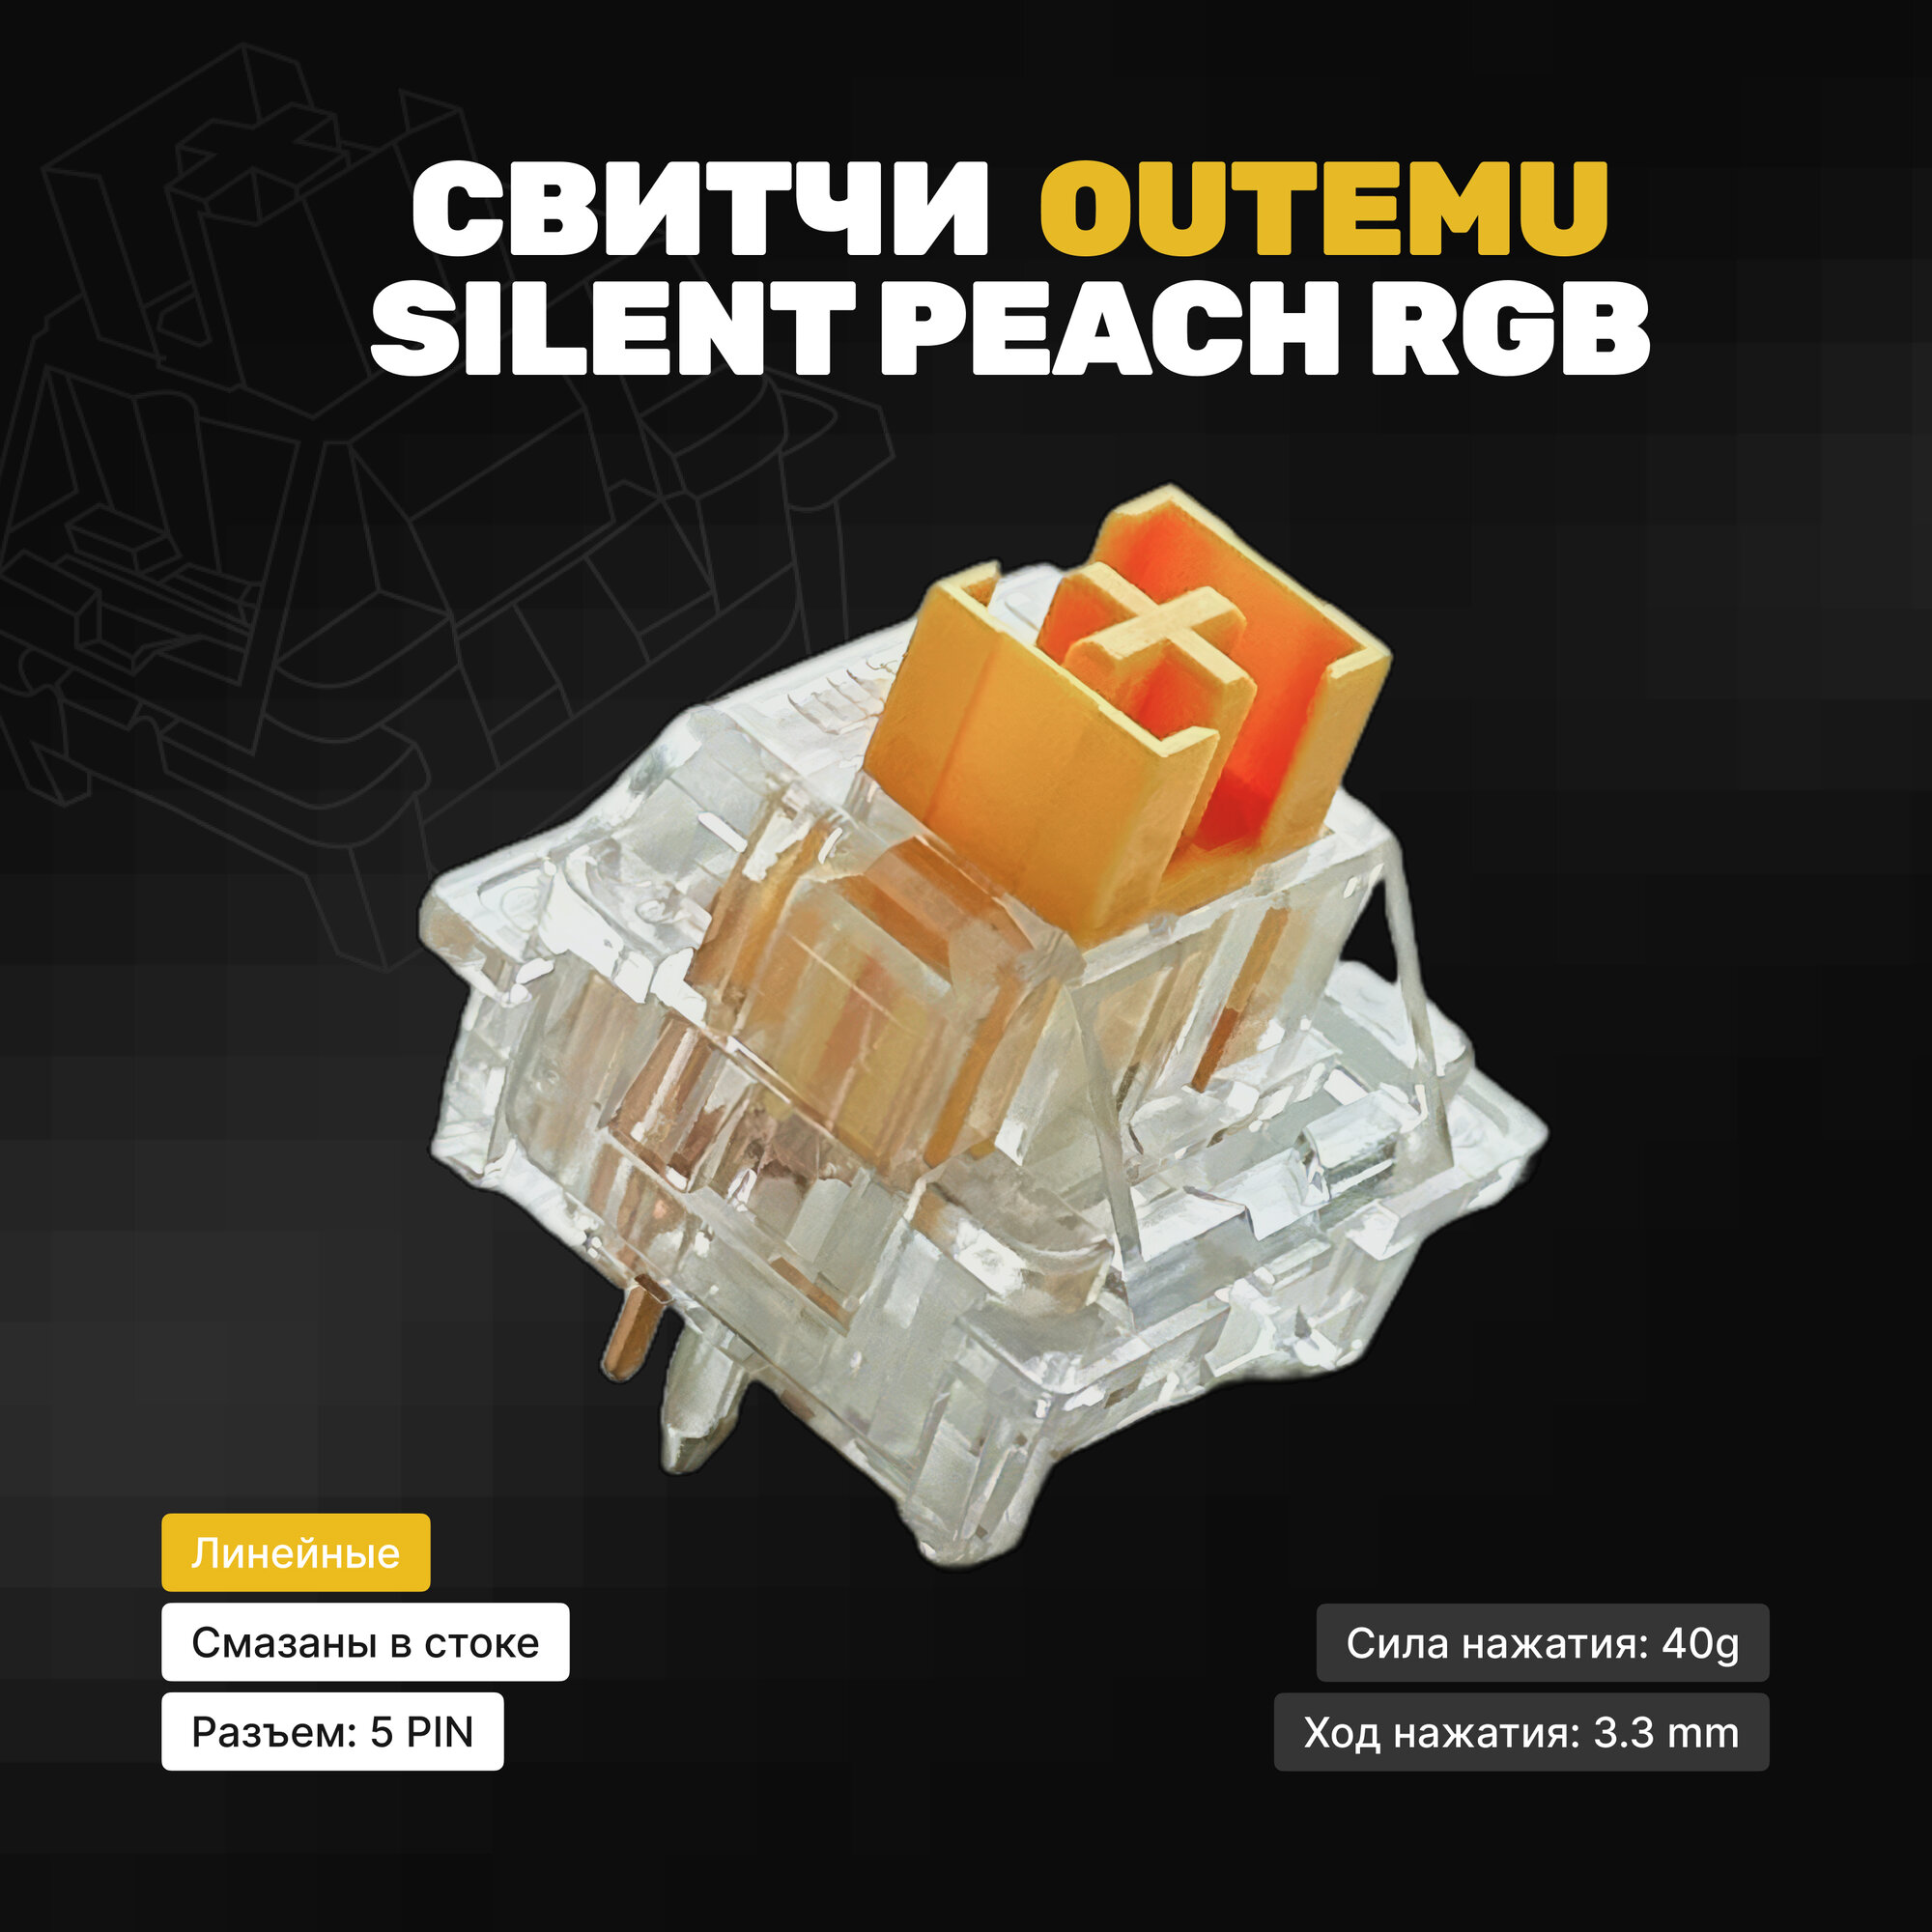 Механические переключатели (свитчи) Outemu Silent Peach V2 RGB (10 штук), линейные, 5-pin,40 грамм